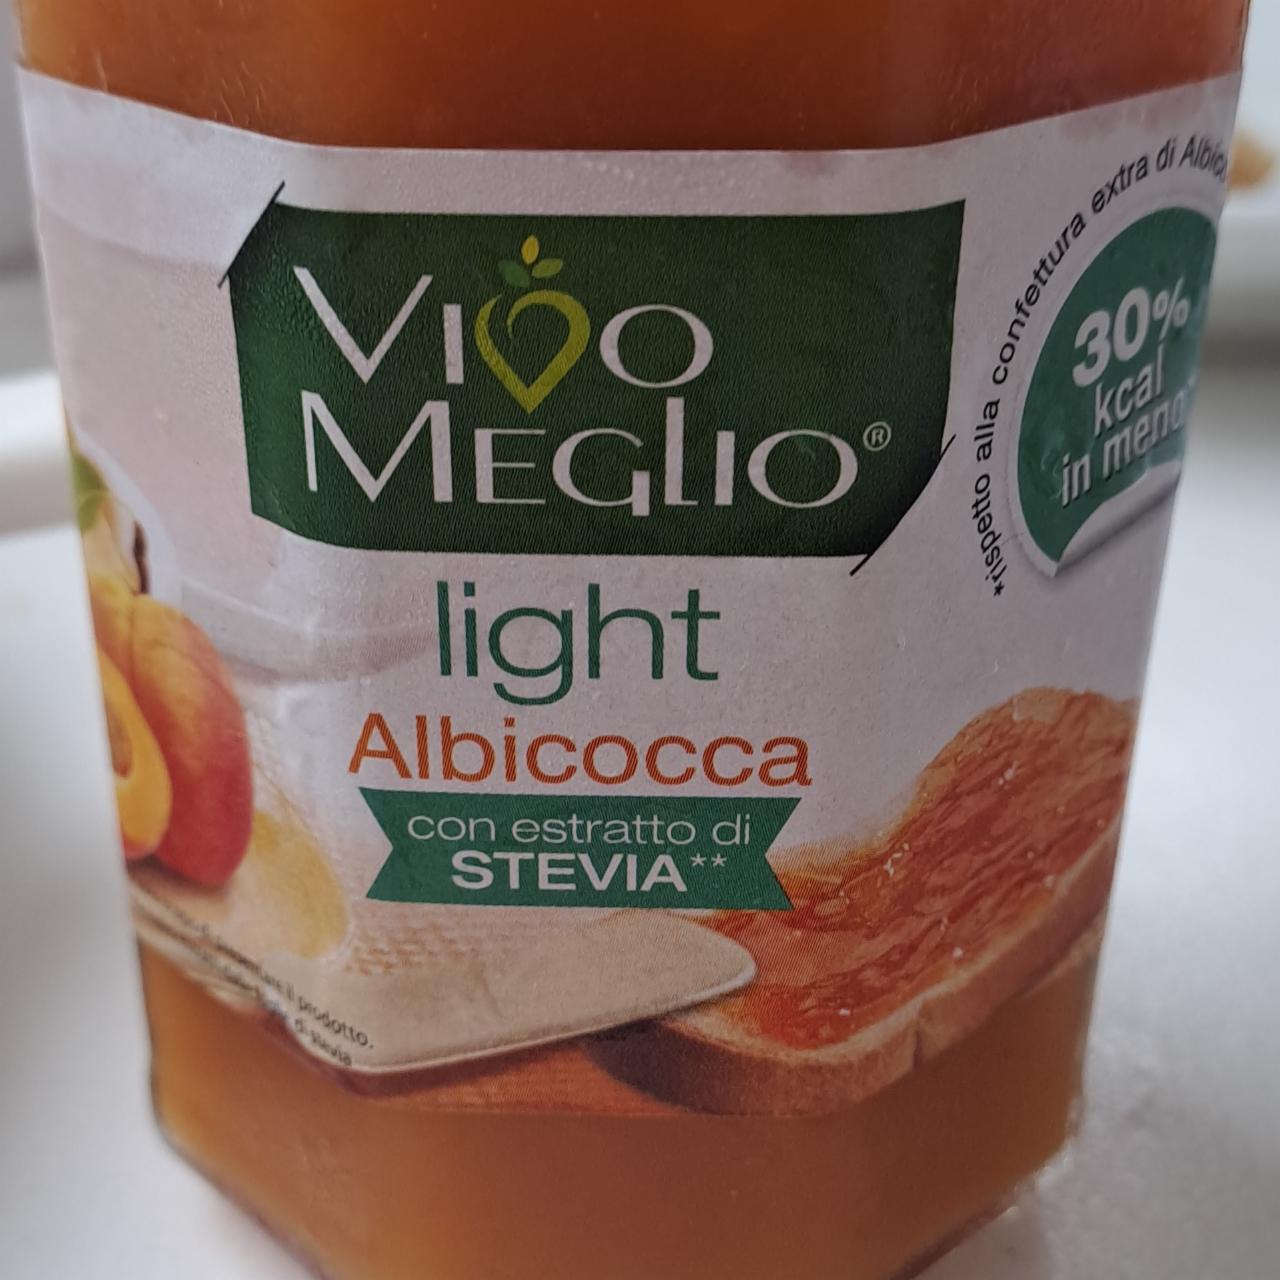 Fotografie - Light Albicocca con estratto di stevia Vivo Meglio